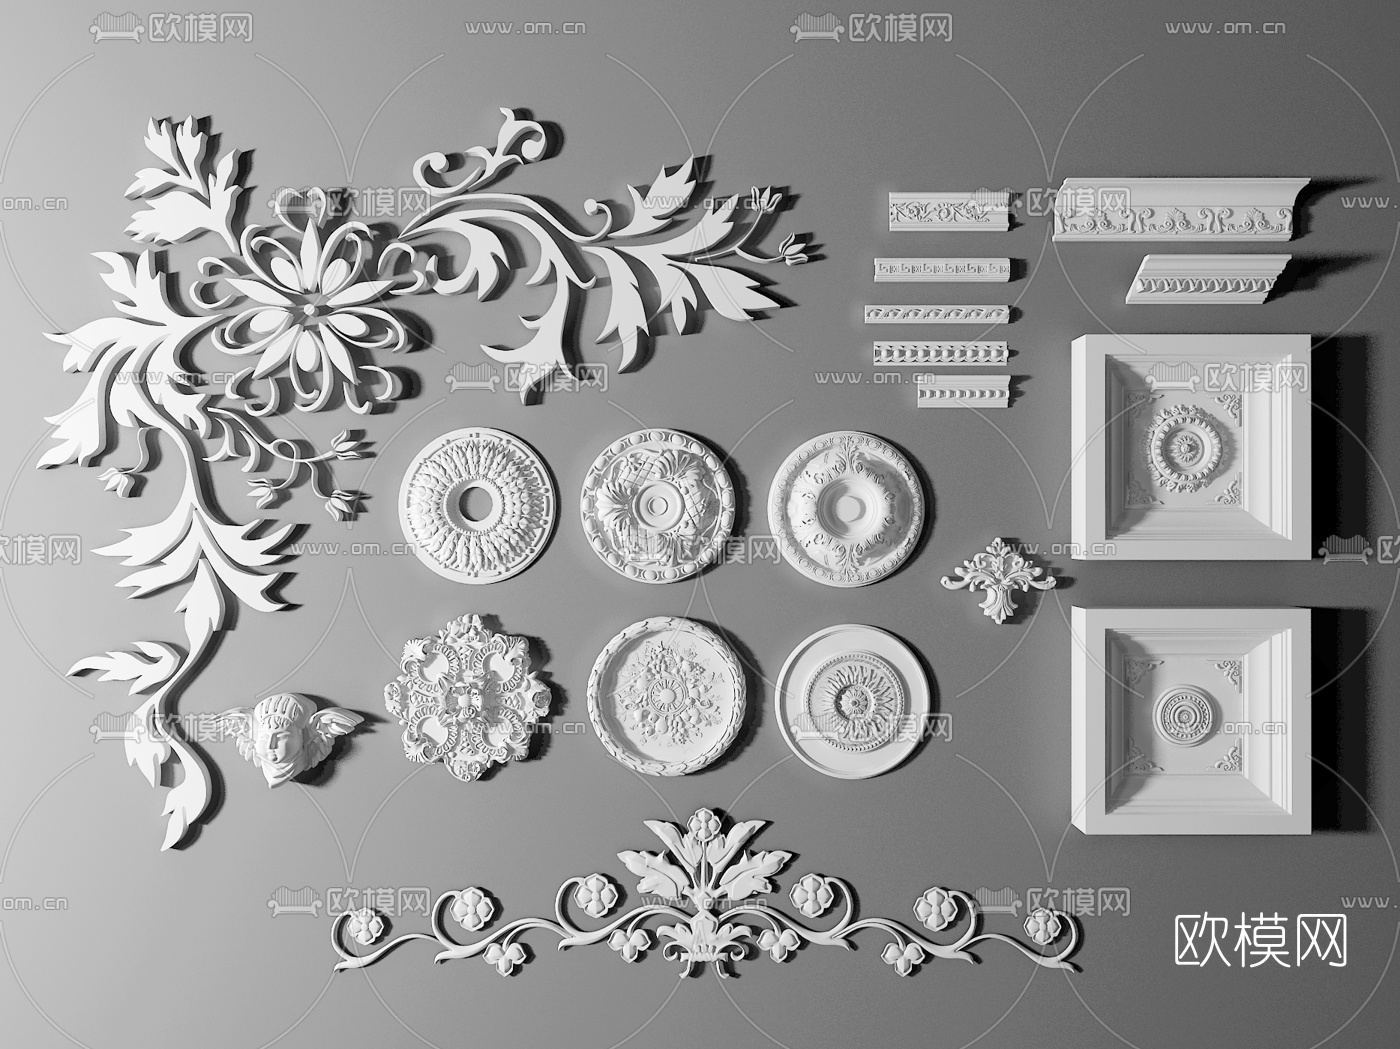 欧式石膏雕花角花-3D模型-模匠网,3D模型下载,免费模型下载,国外模型下载